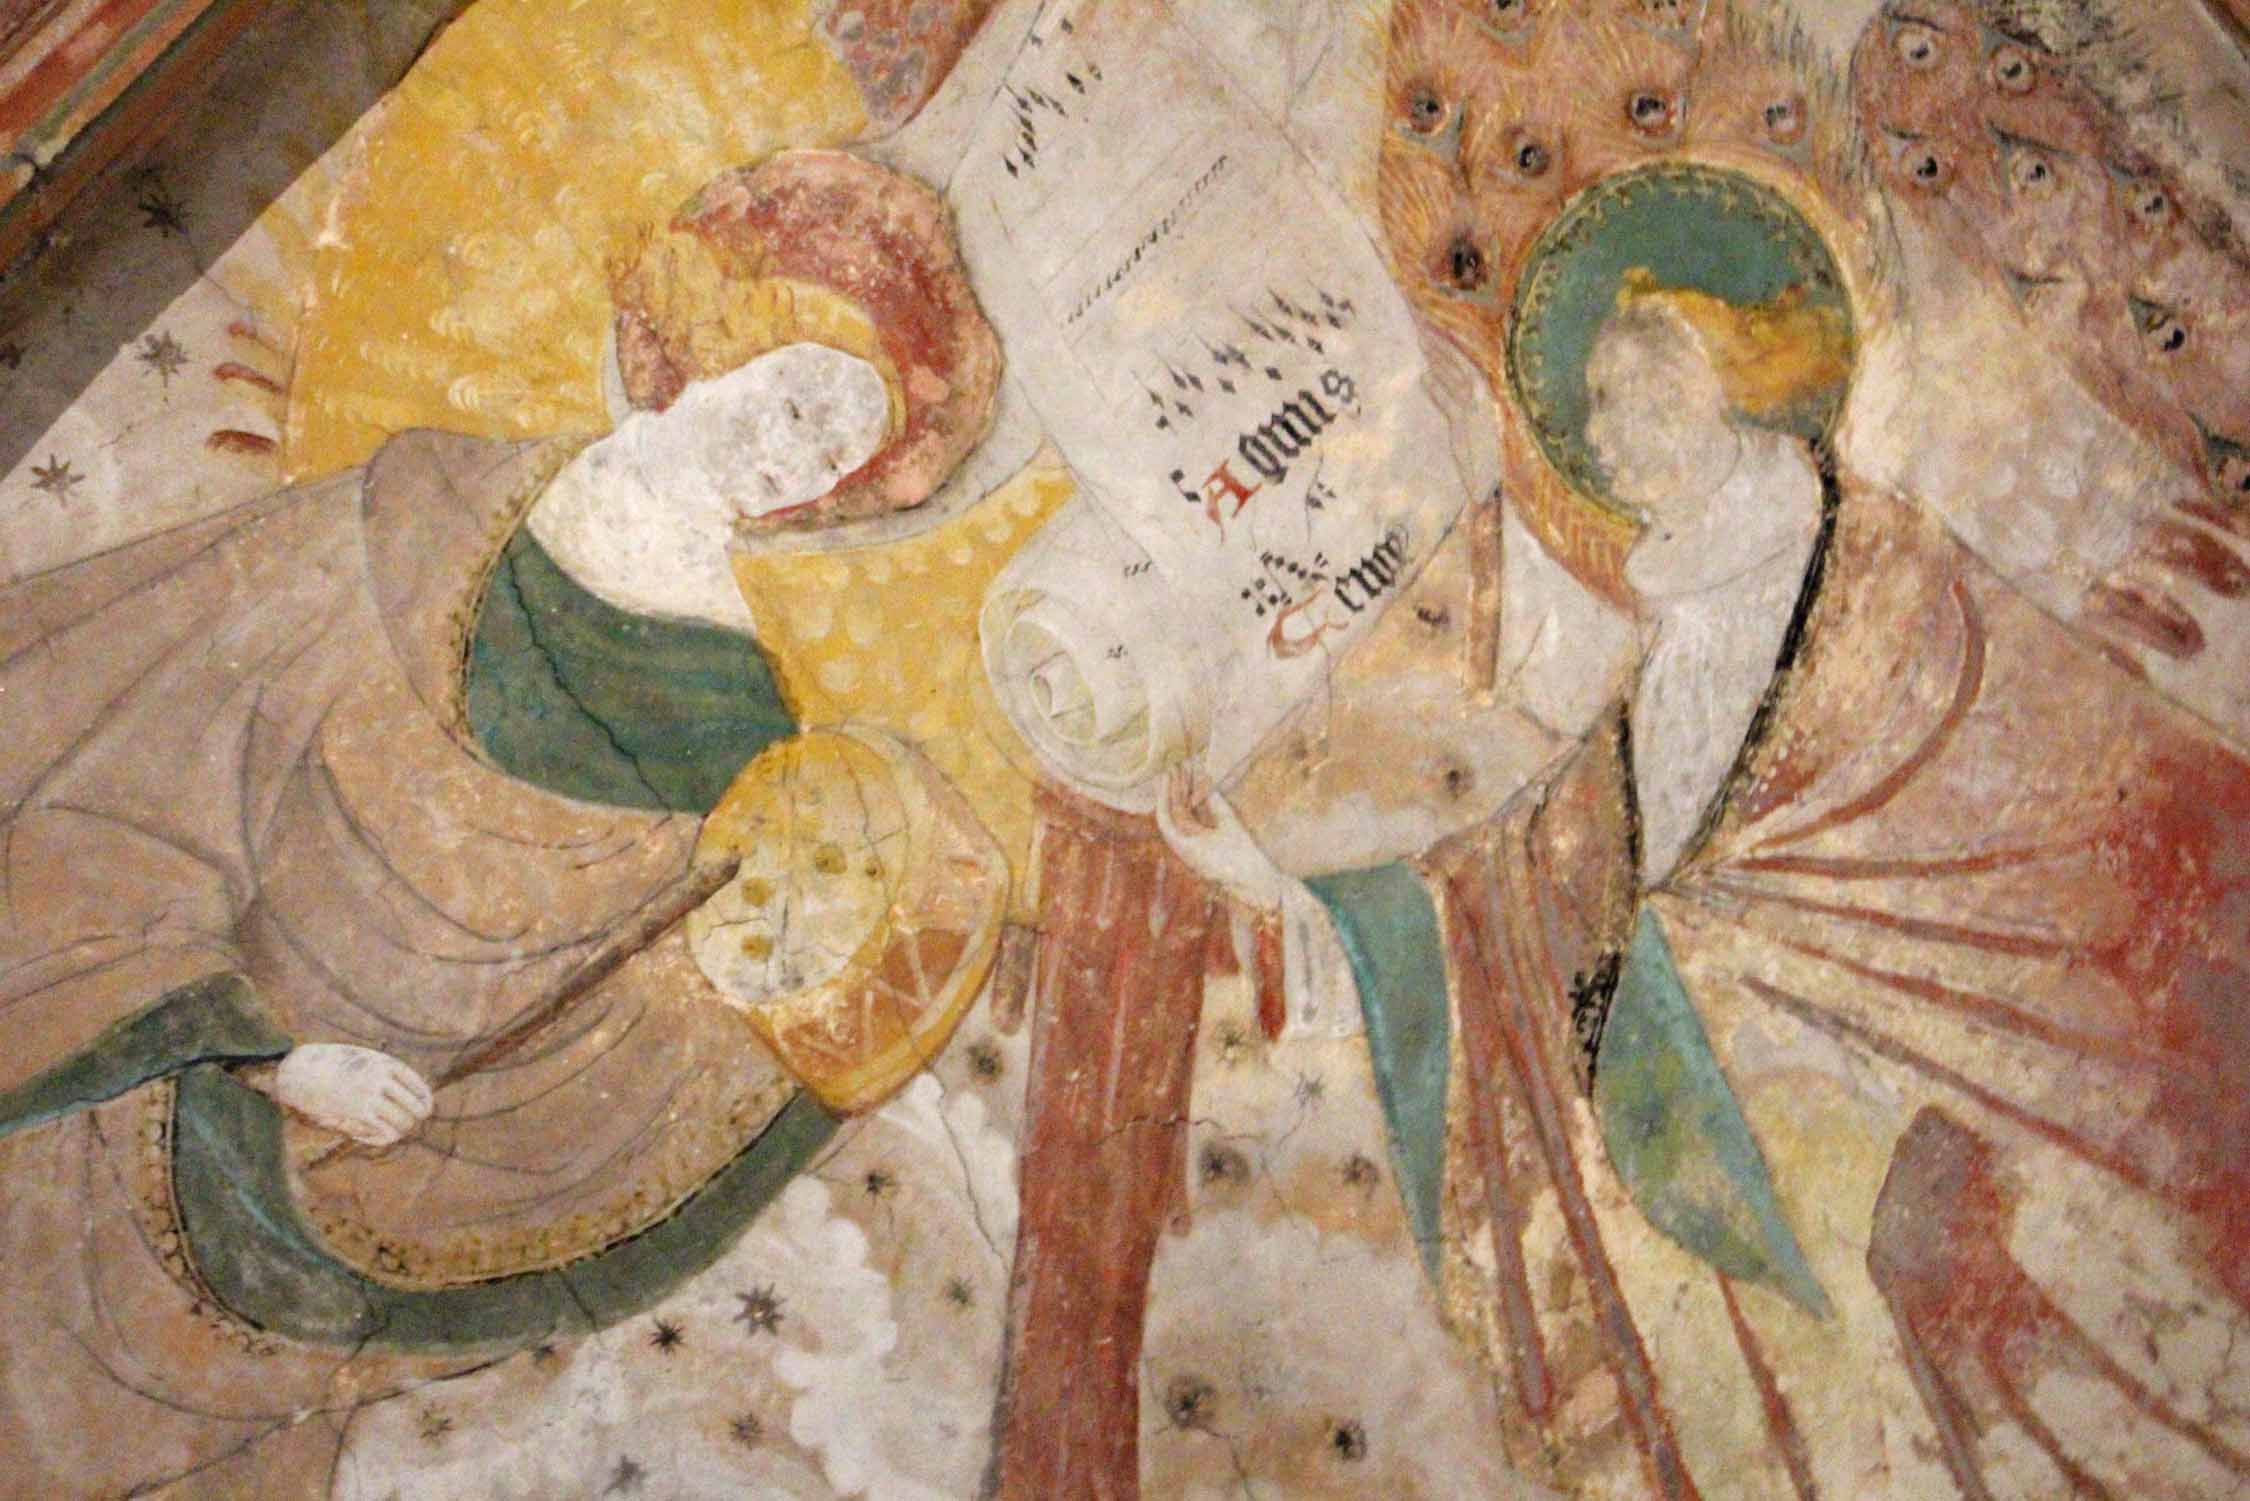 Kernascléden, église Notre-Dame, peintures